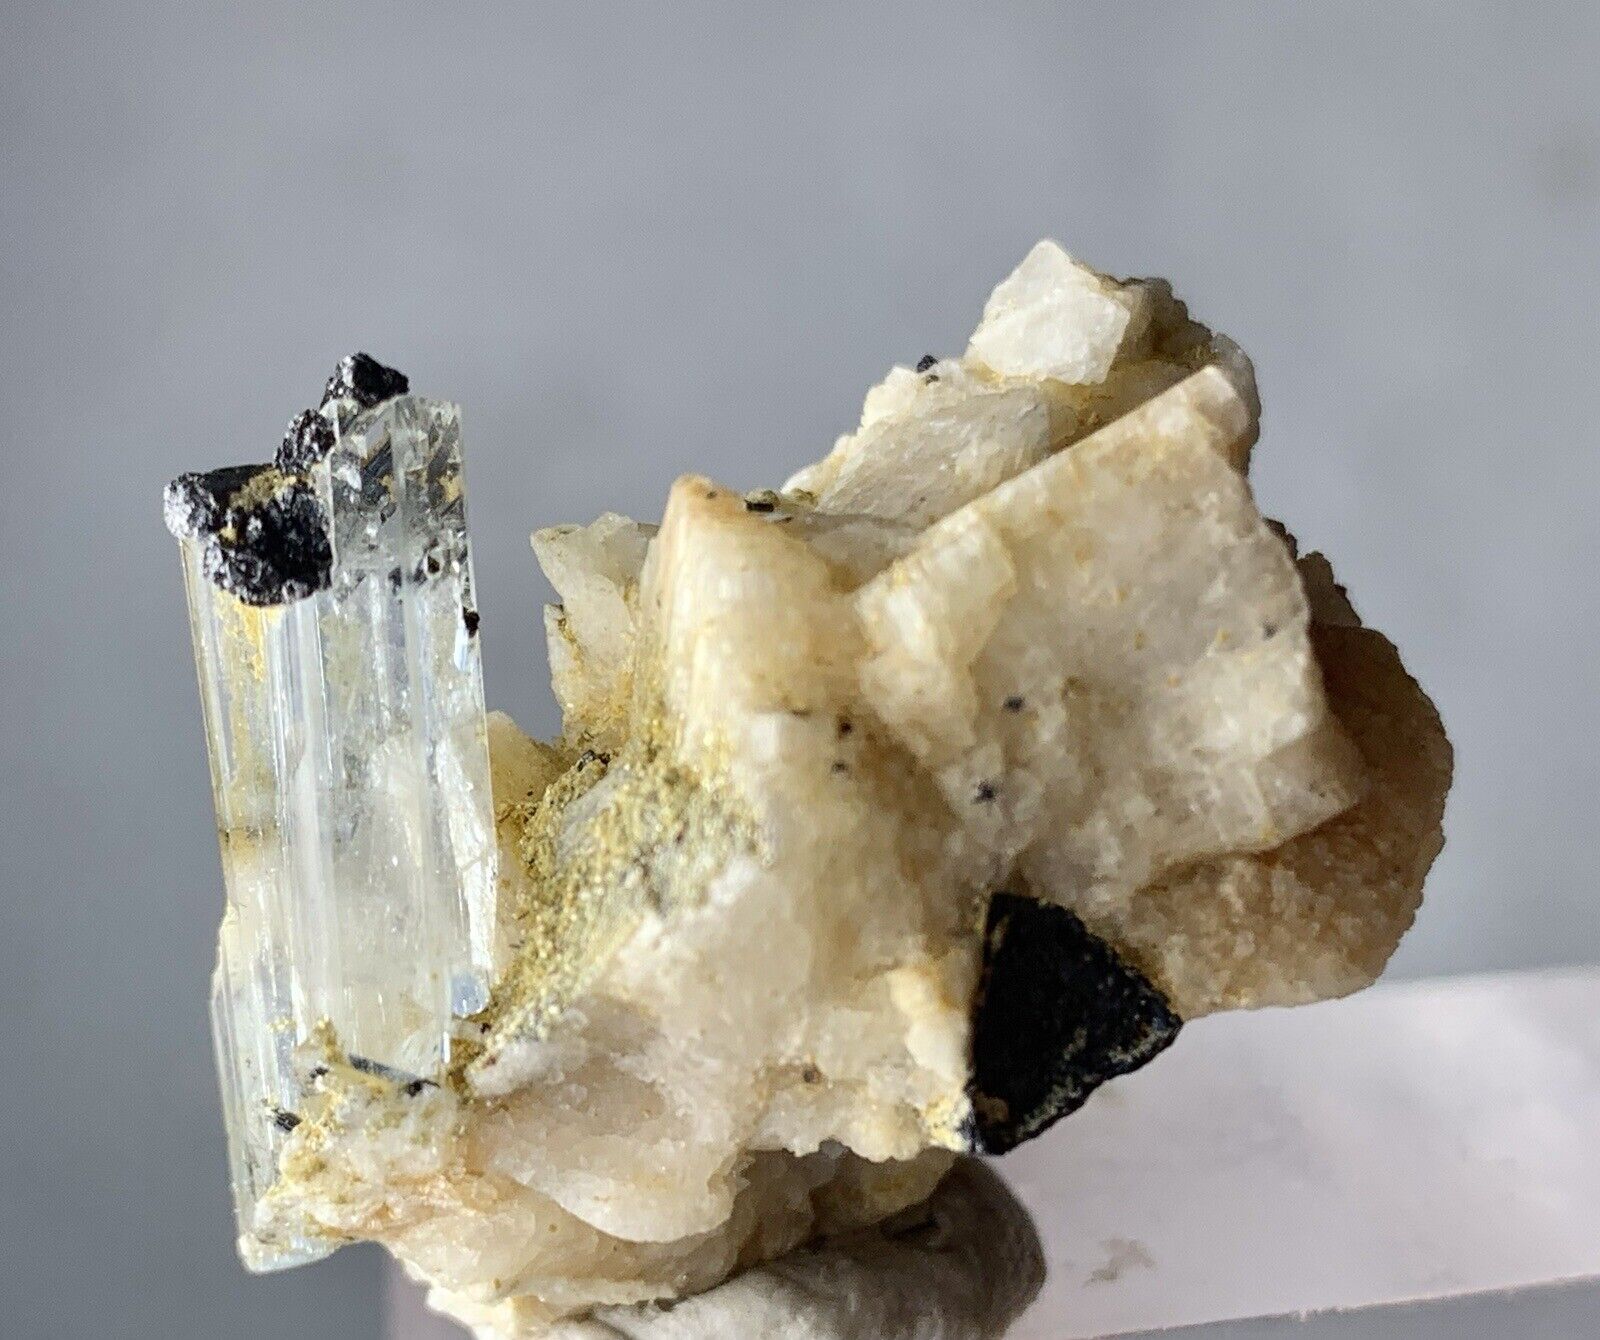 39 Carat Aquamarine Specimen Crystals From Pakistan